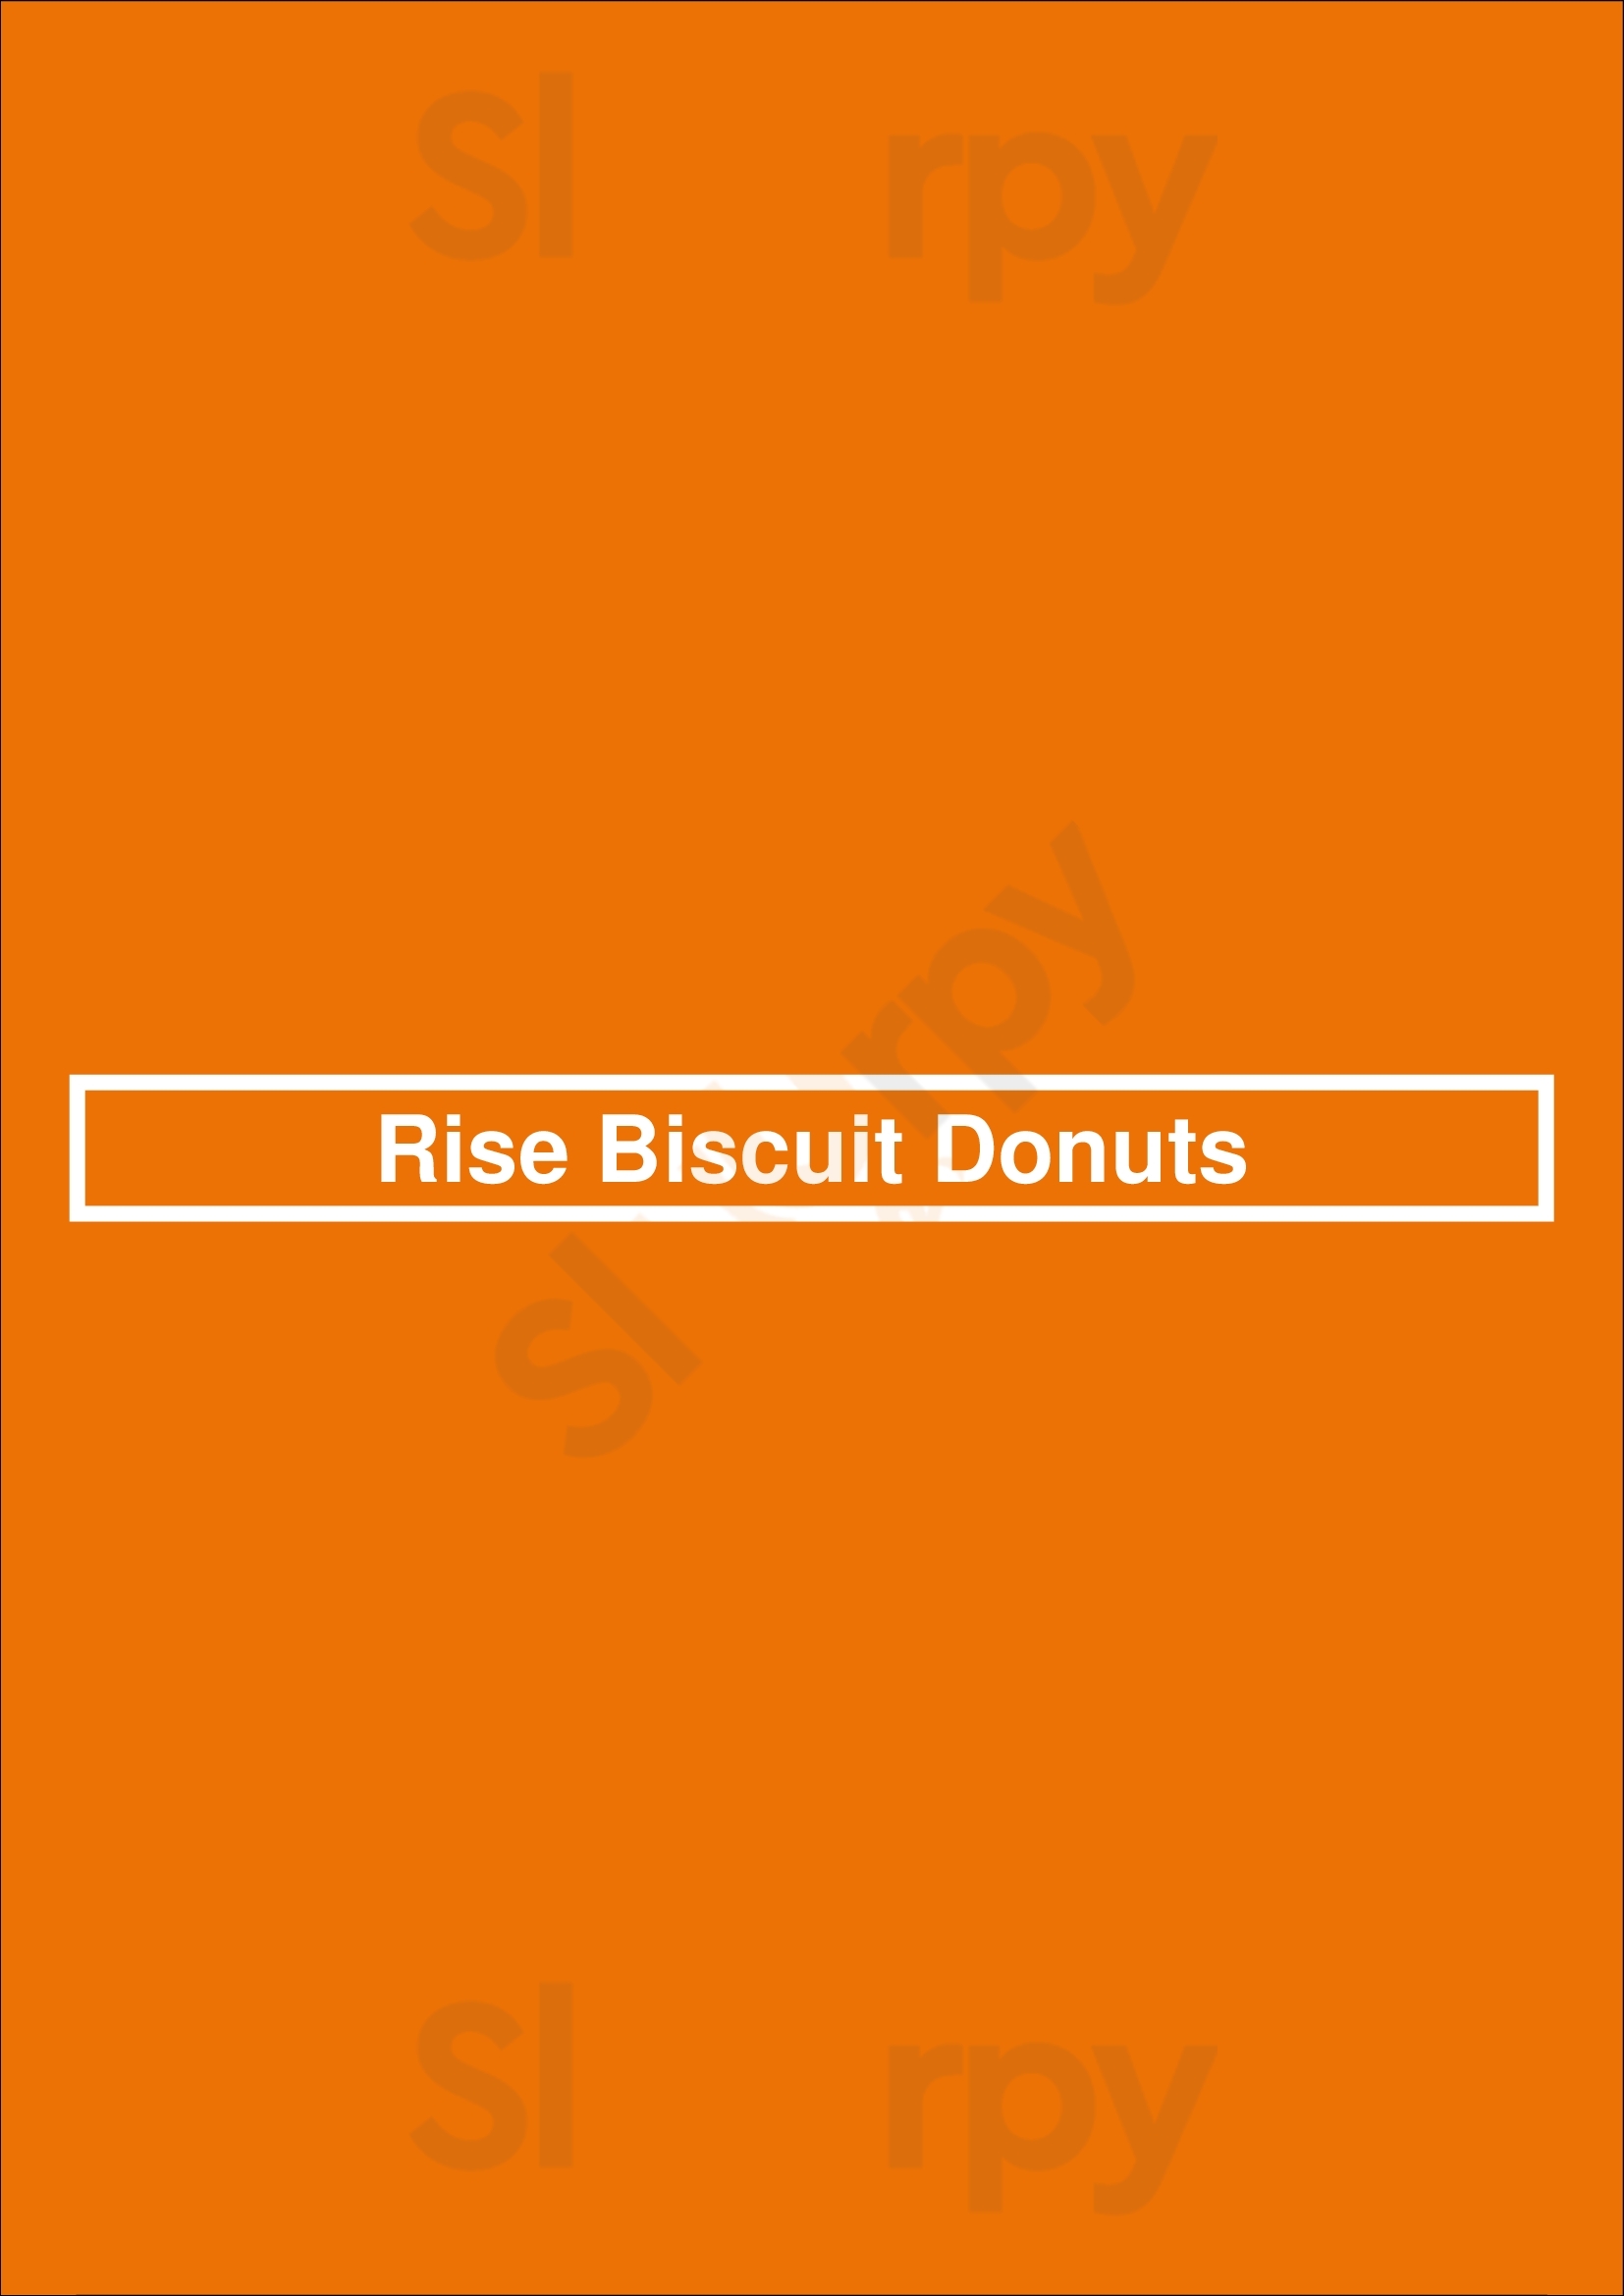 Rise Biscuit Donuts Richmond Menu - 1